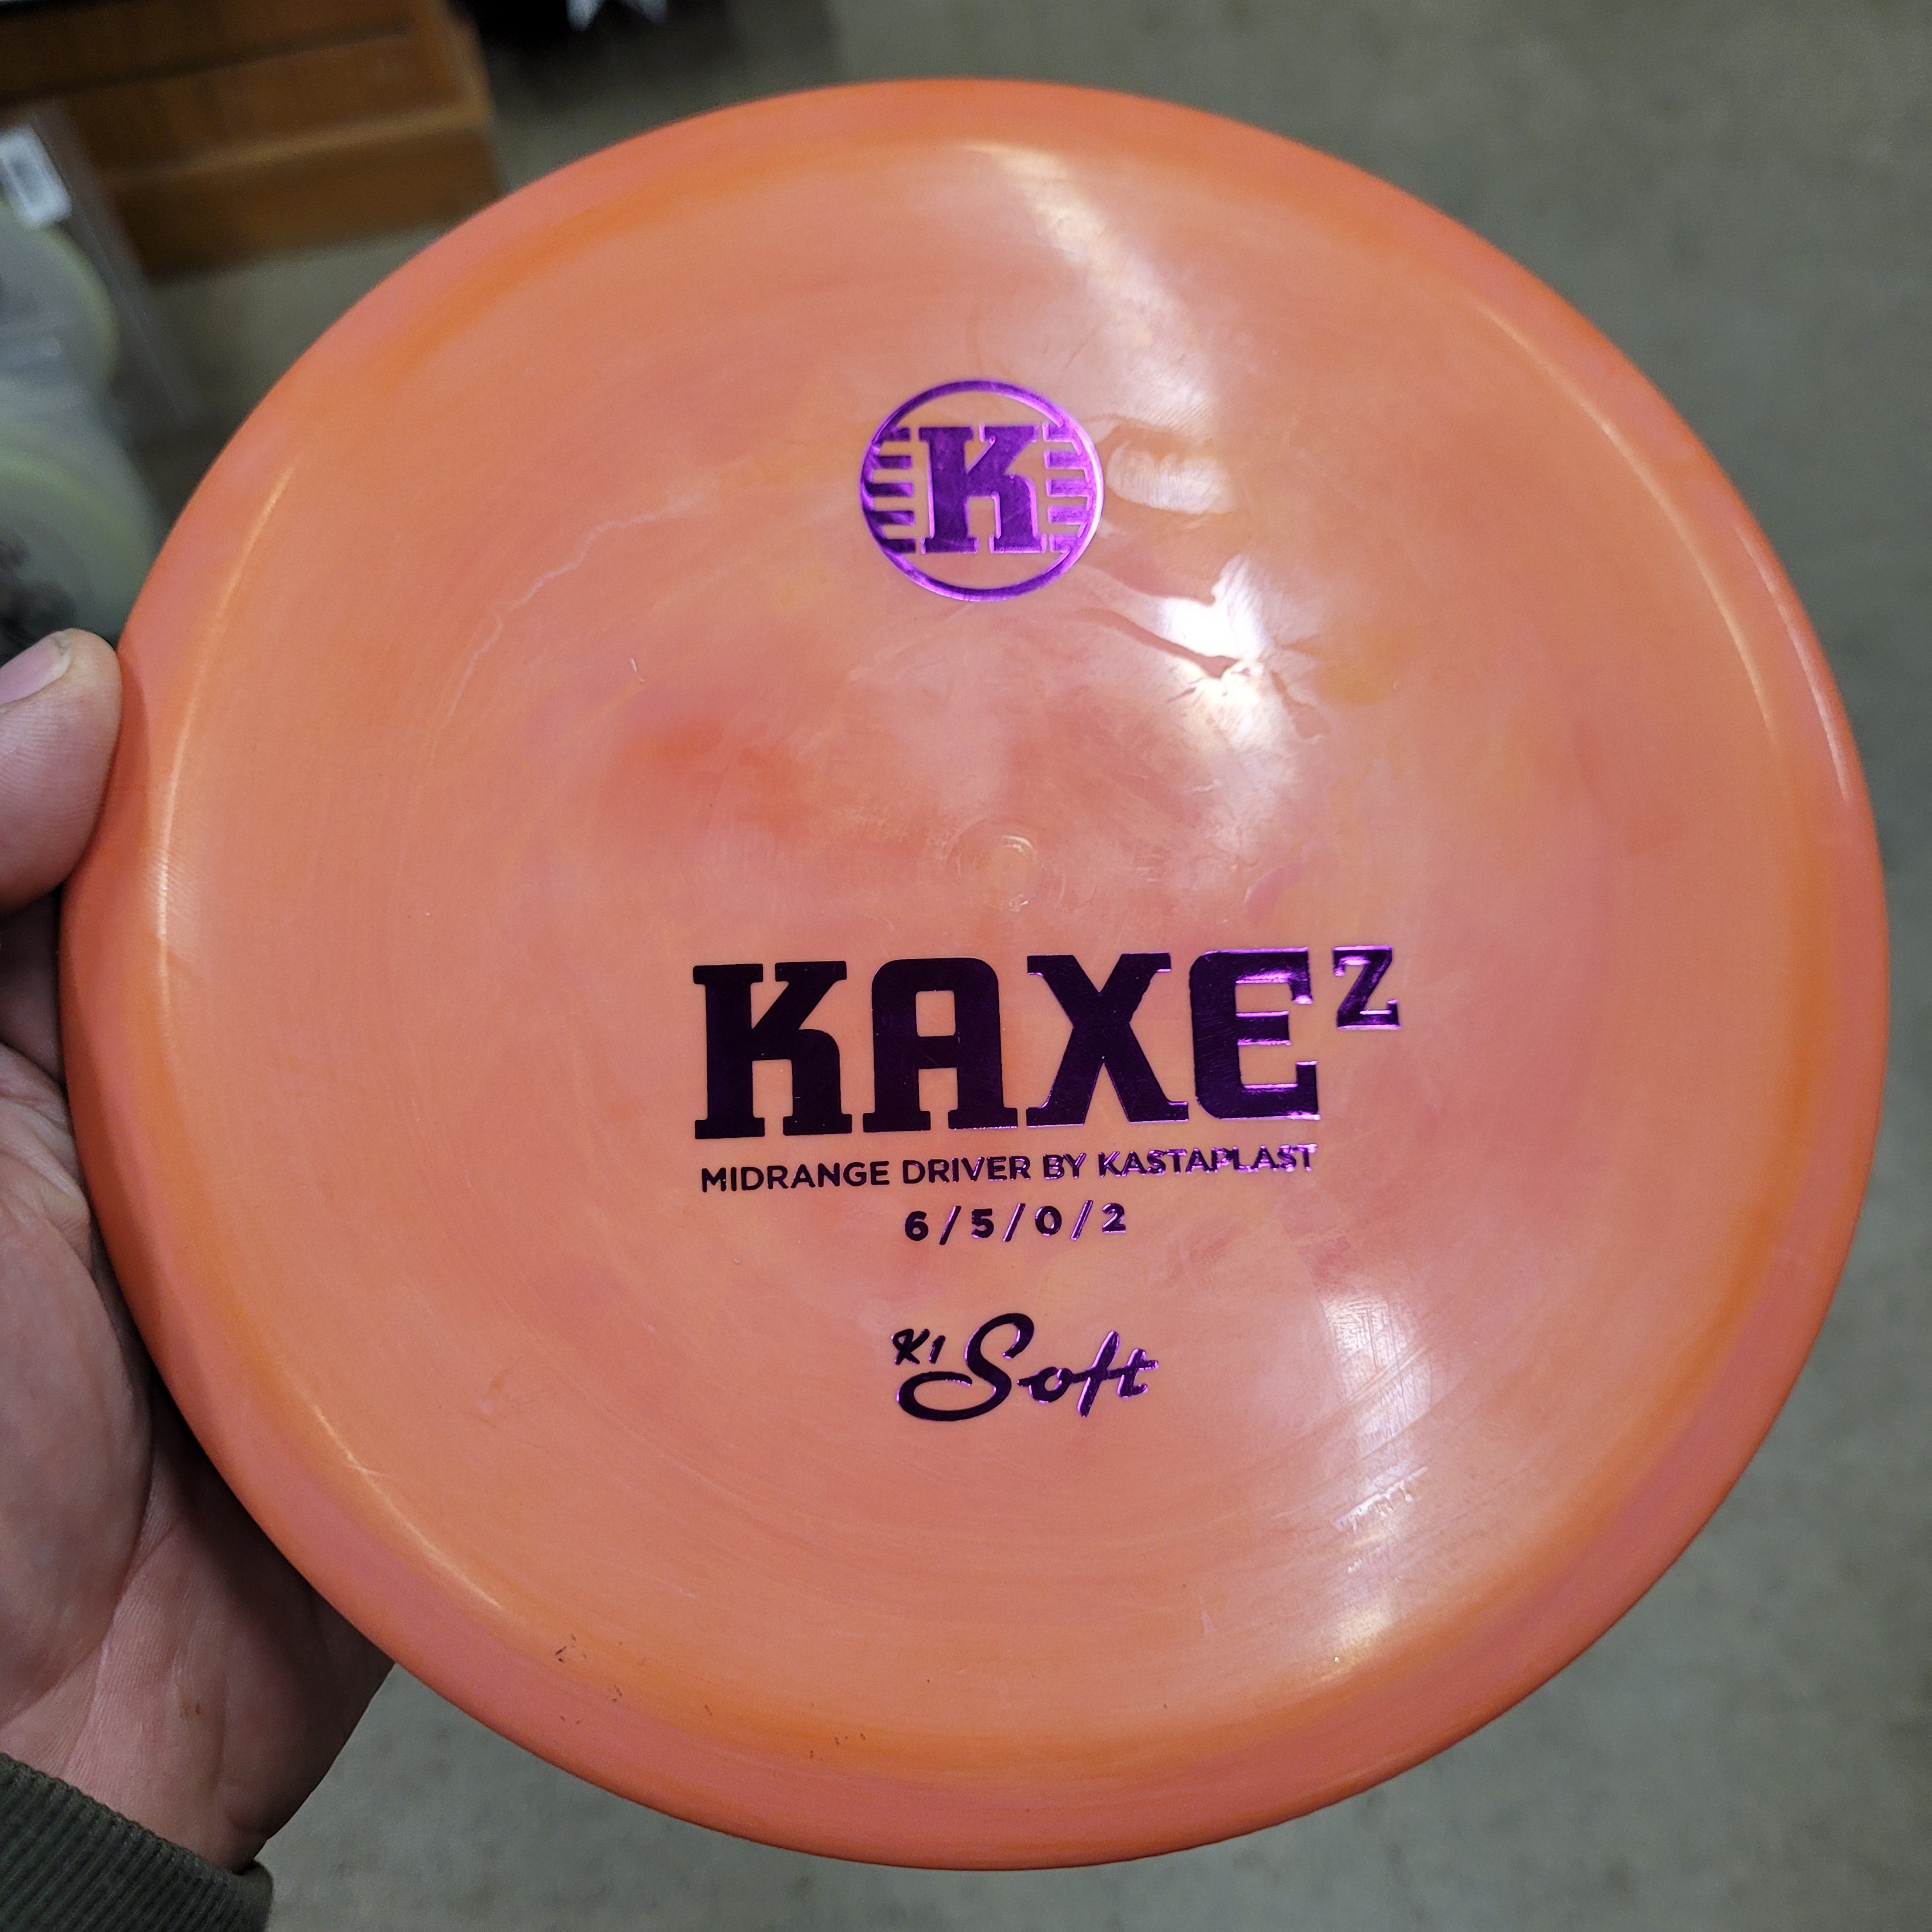 KAXE Z K1 Soft